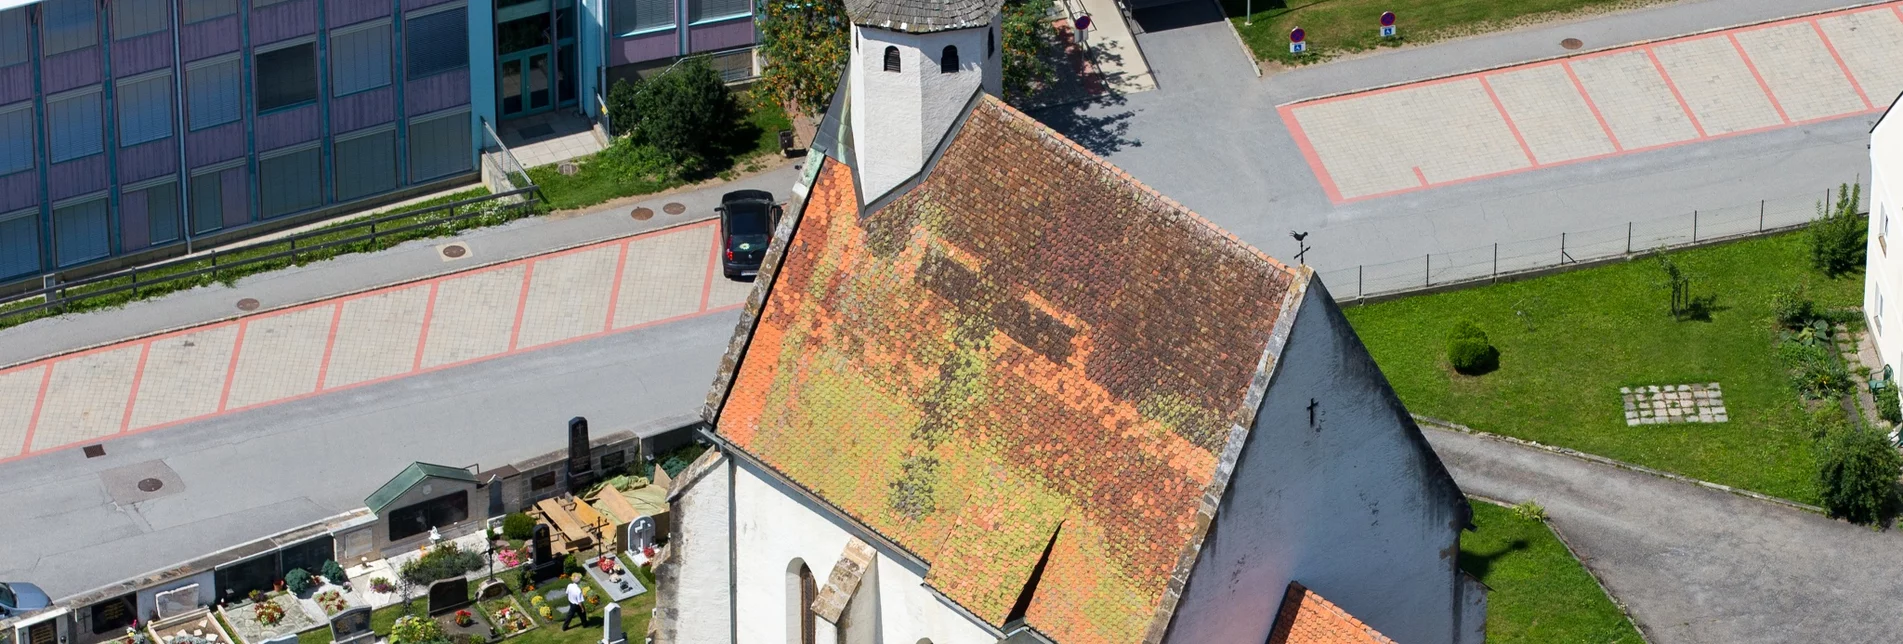 Pilgerweg Von der St. Ägidikirche zur St. Annakirche - Touren-Impression #1 | © Tourismusverband Region Murau